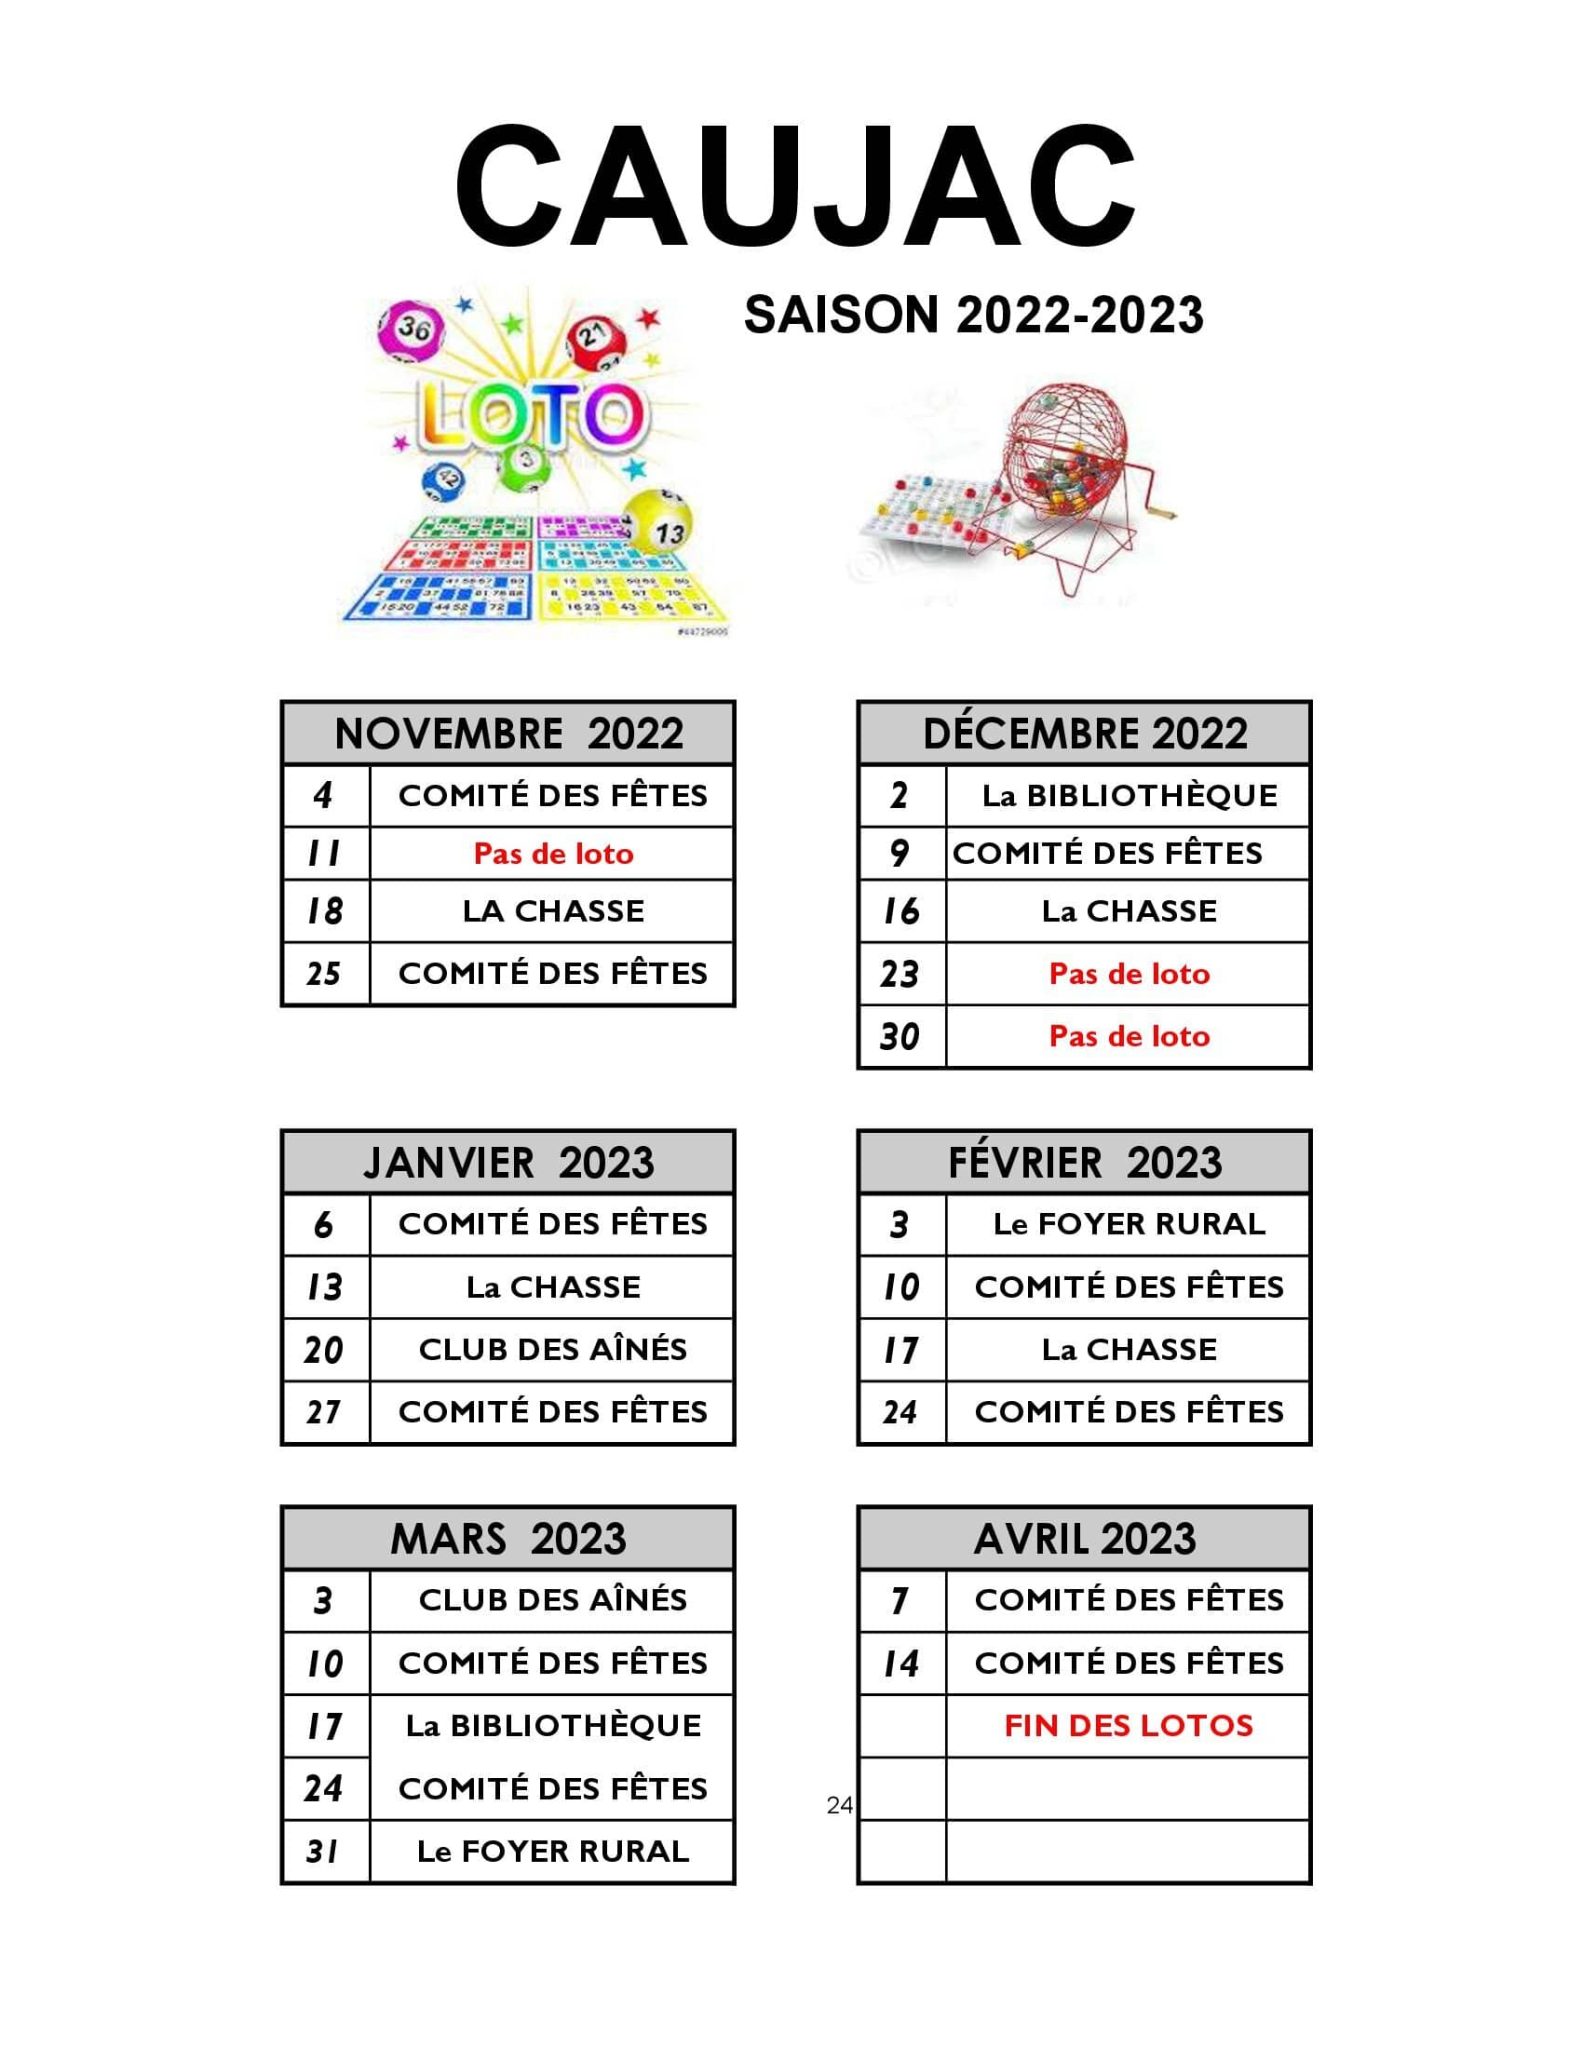 SAISON DES LOTOS 2022/2023